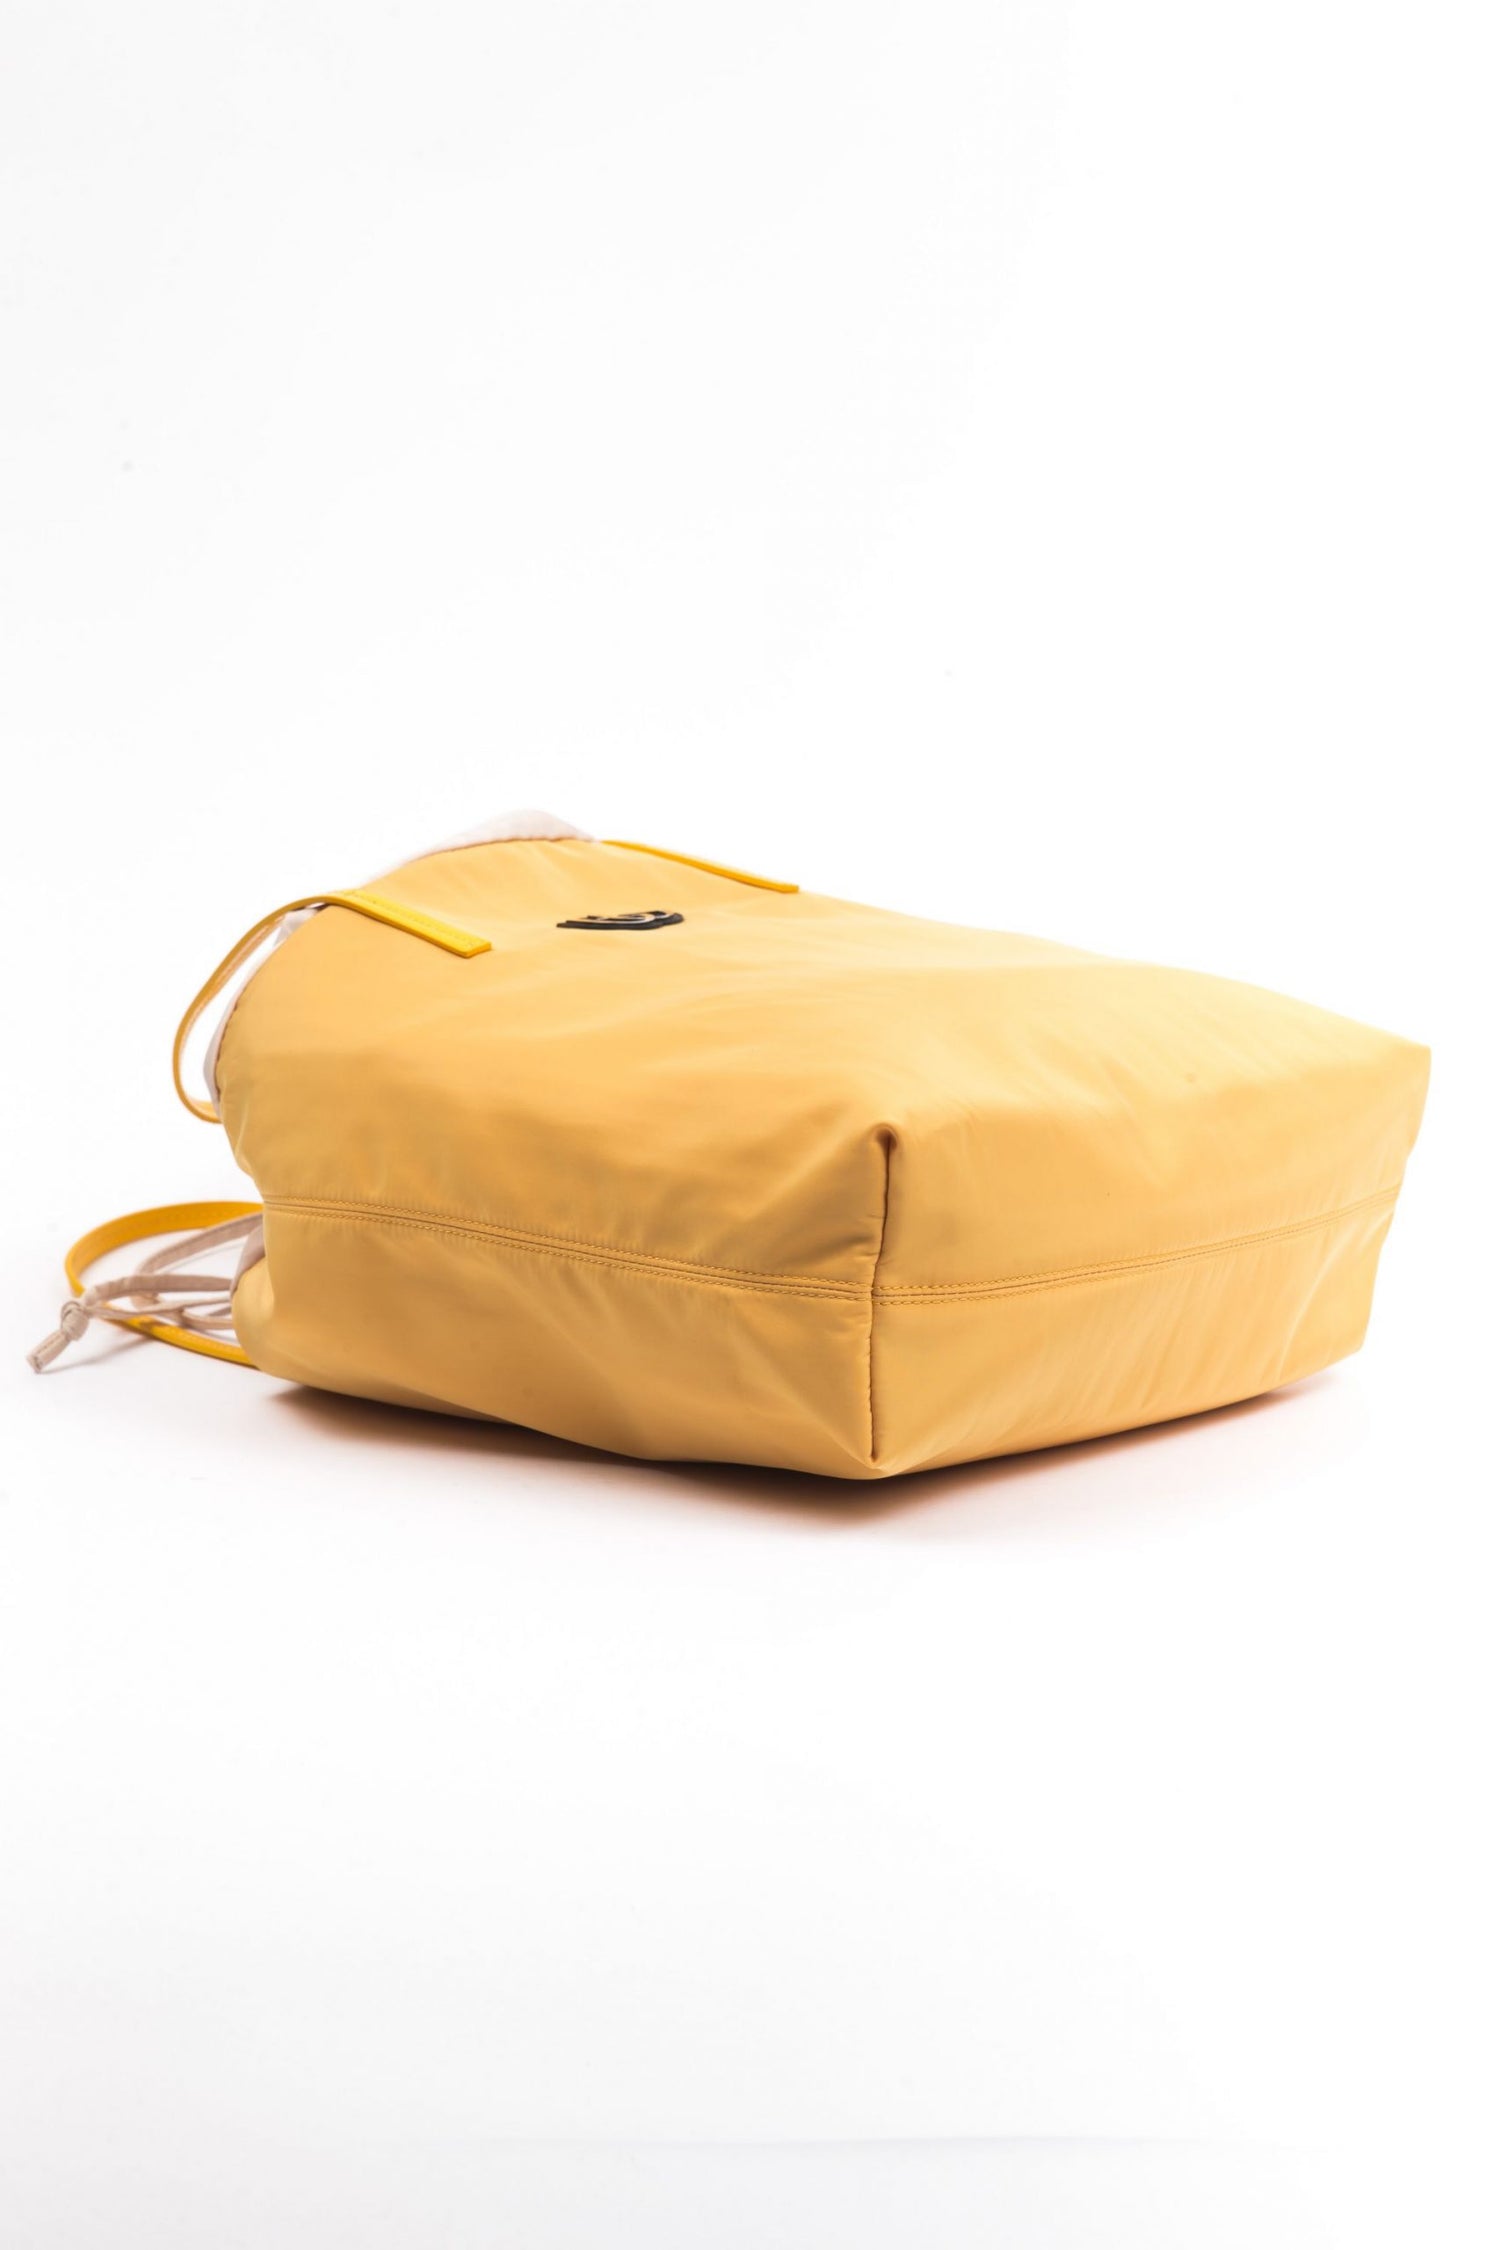 Yellow Polyester Handbag